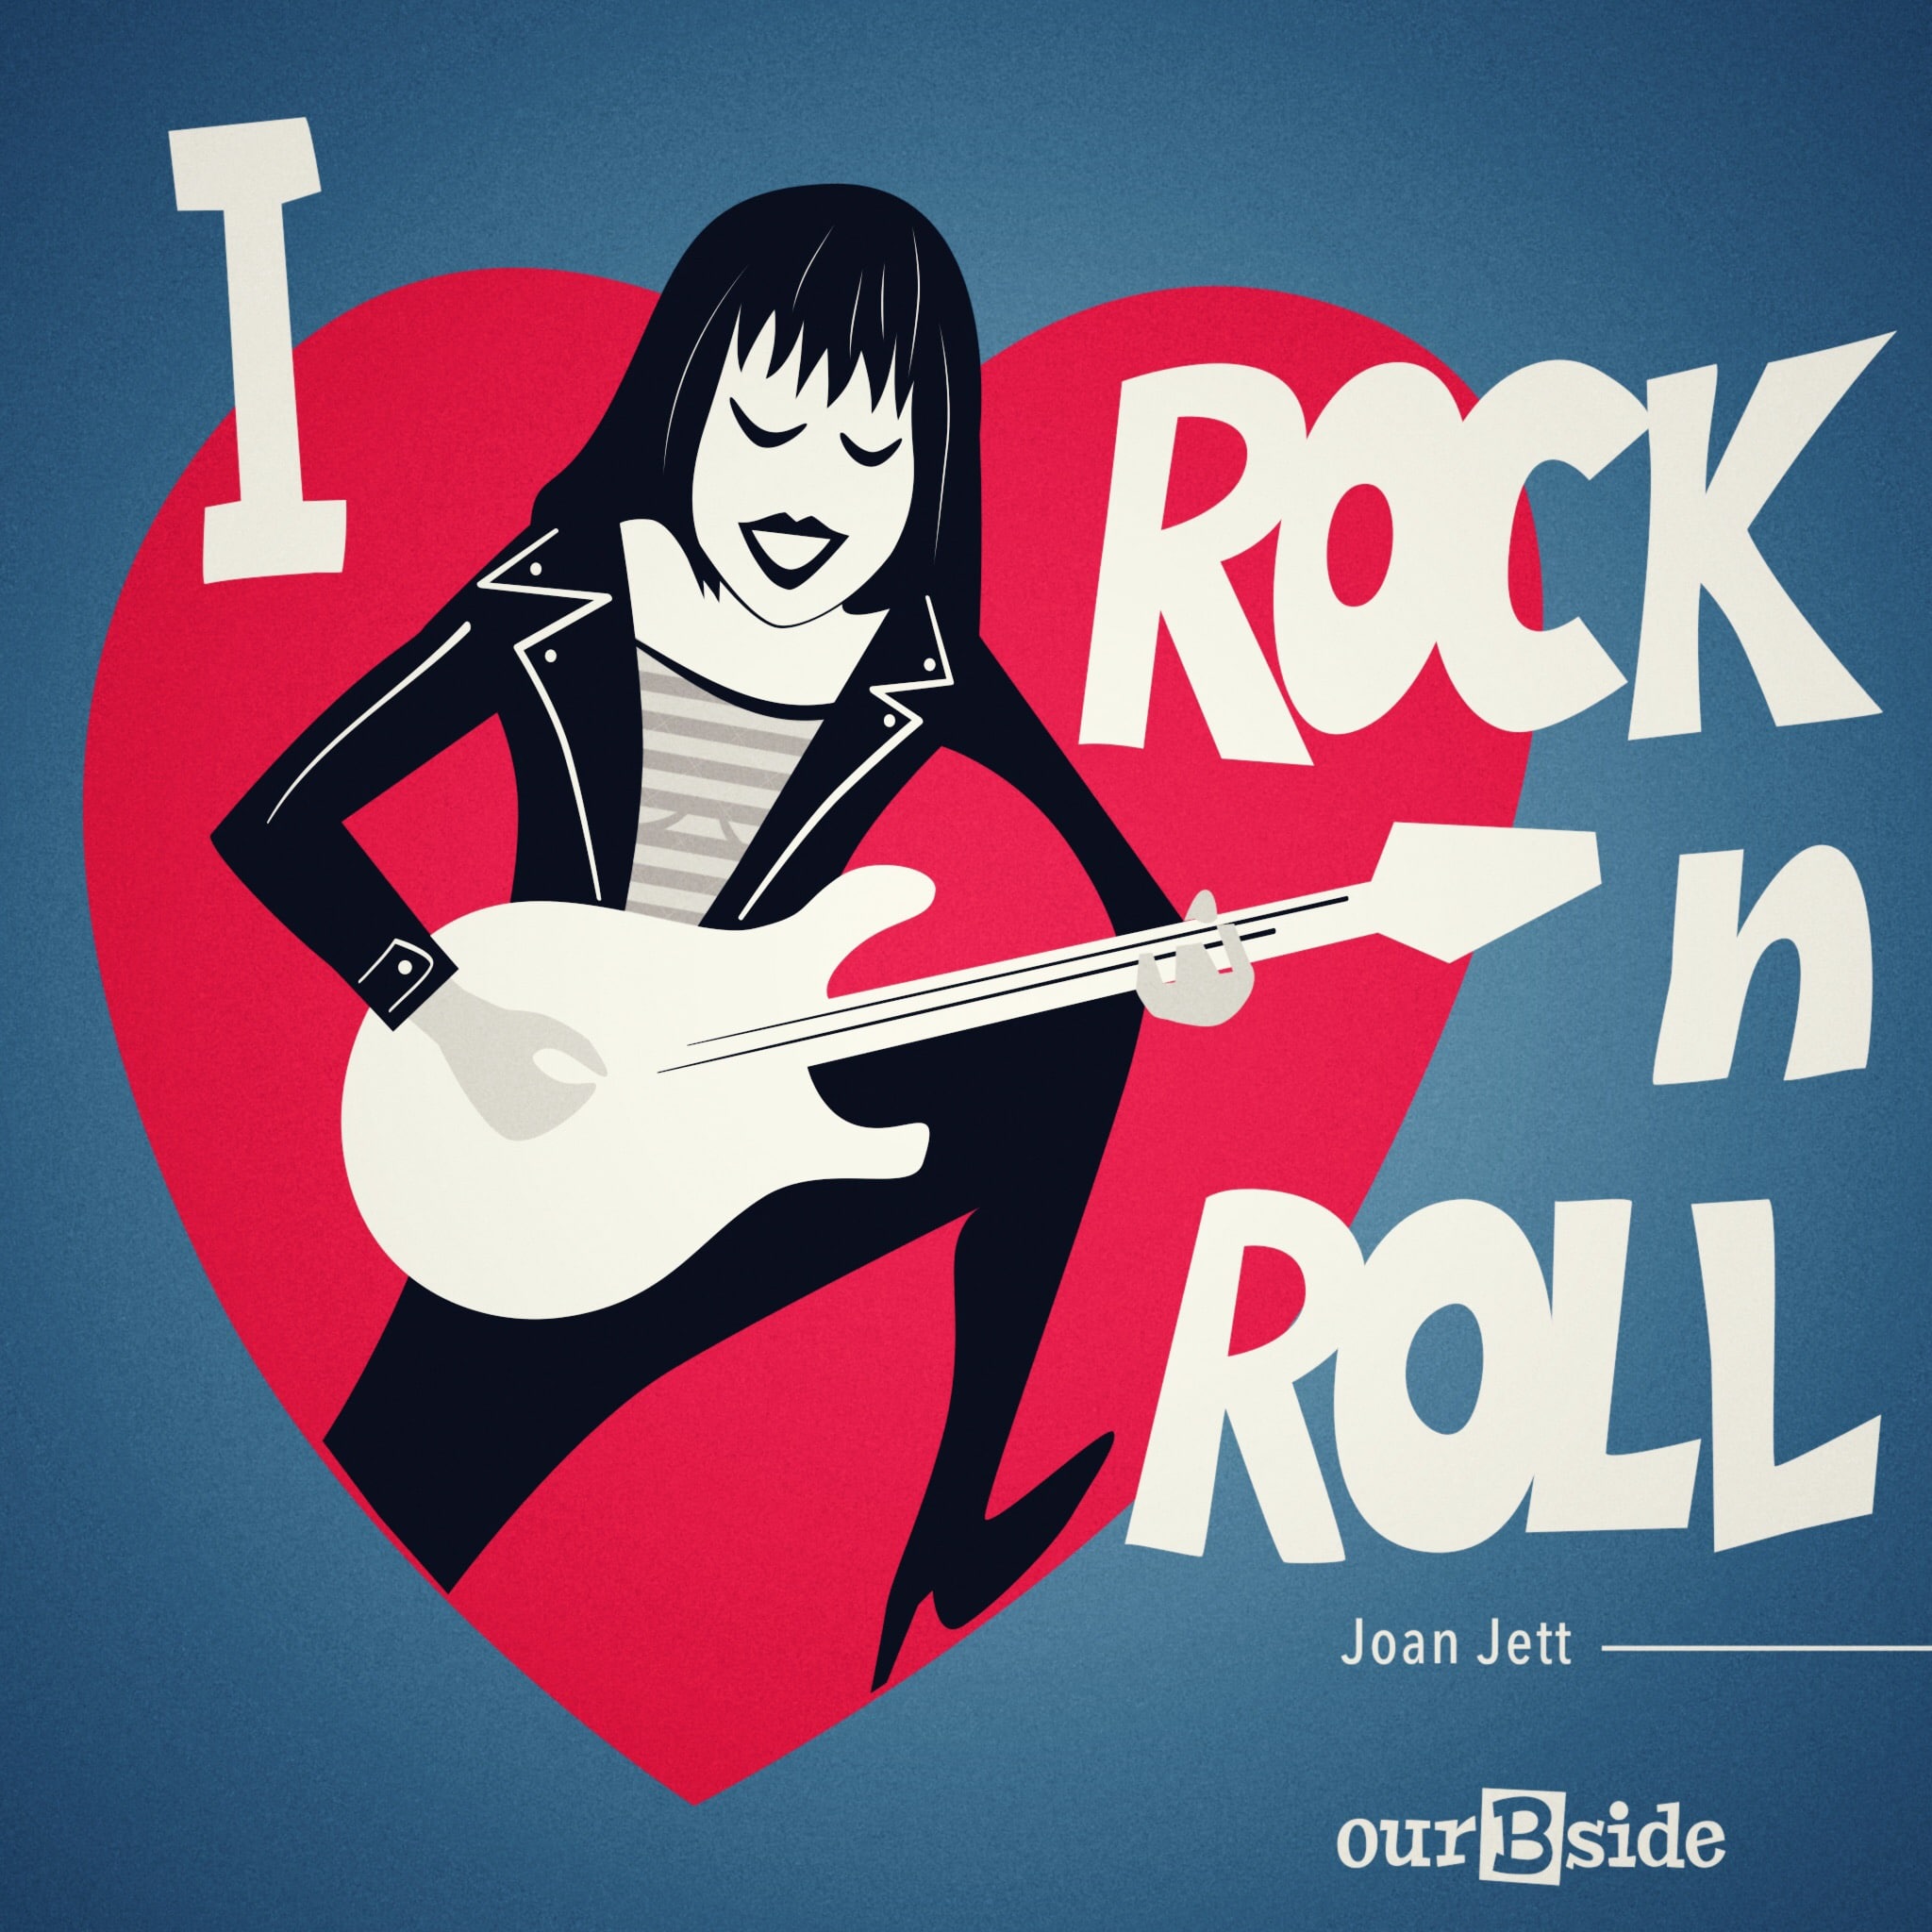 I rock n roll. I Love Rock ’n’ Roll (Joan Jett)1982. Постер рок н ролл. Обложка рок н ролл. Обложки ретро рок-н ролл.